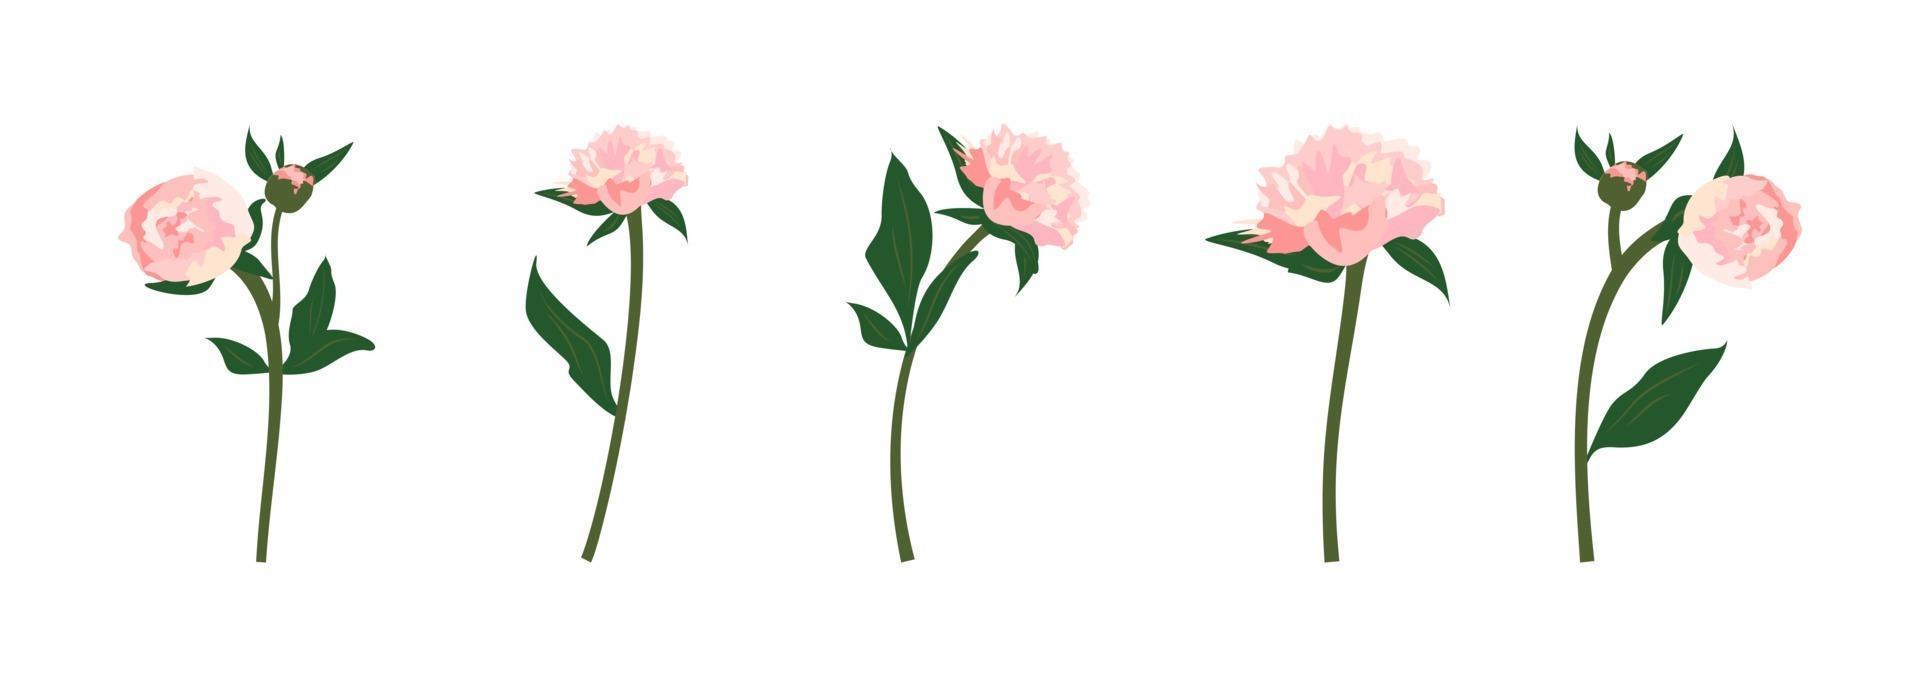 uppsättning av känsliga rosa vår- och sommarpioner blommor med stjälkblad och knoppar dekoration för kort bröllop helgdagar och andra mönster vektor